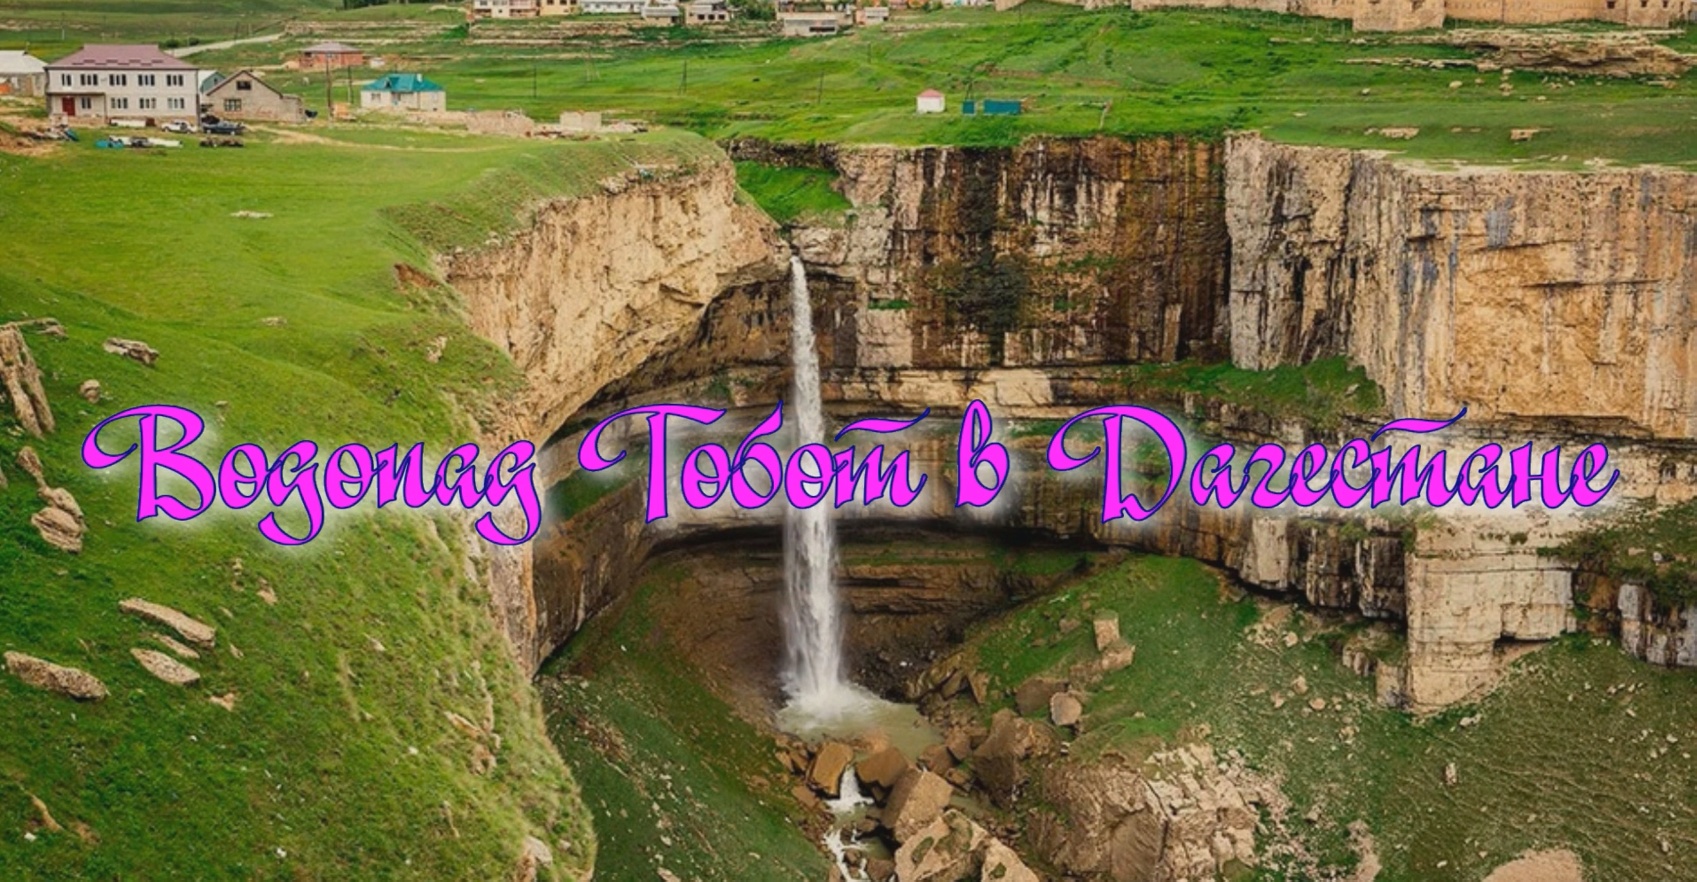 ВодопадТобот в Дагестане